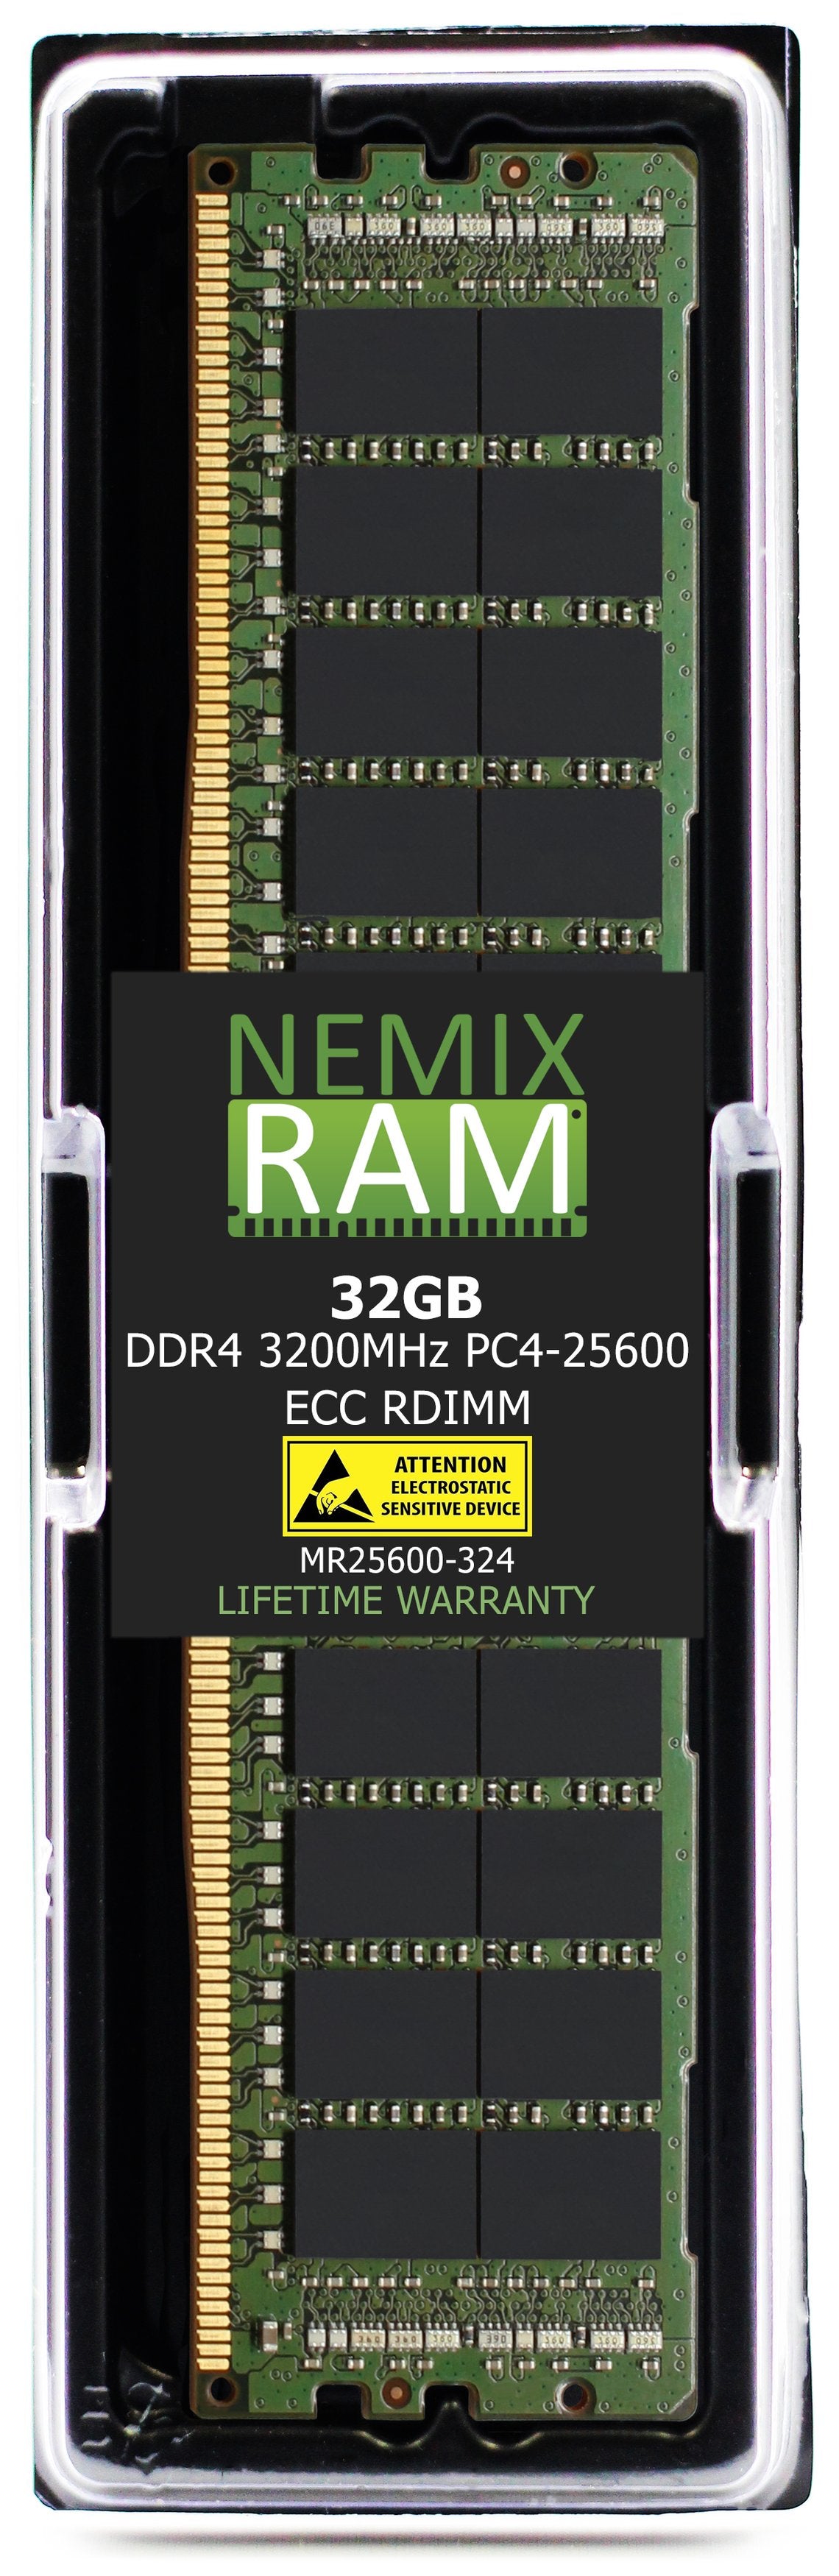 Hynix HMA84GR7DJR4N-XN 32GB DDR4 3200MHZ PC4-25600 RDIMM Compatible Memory Module